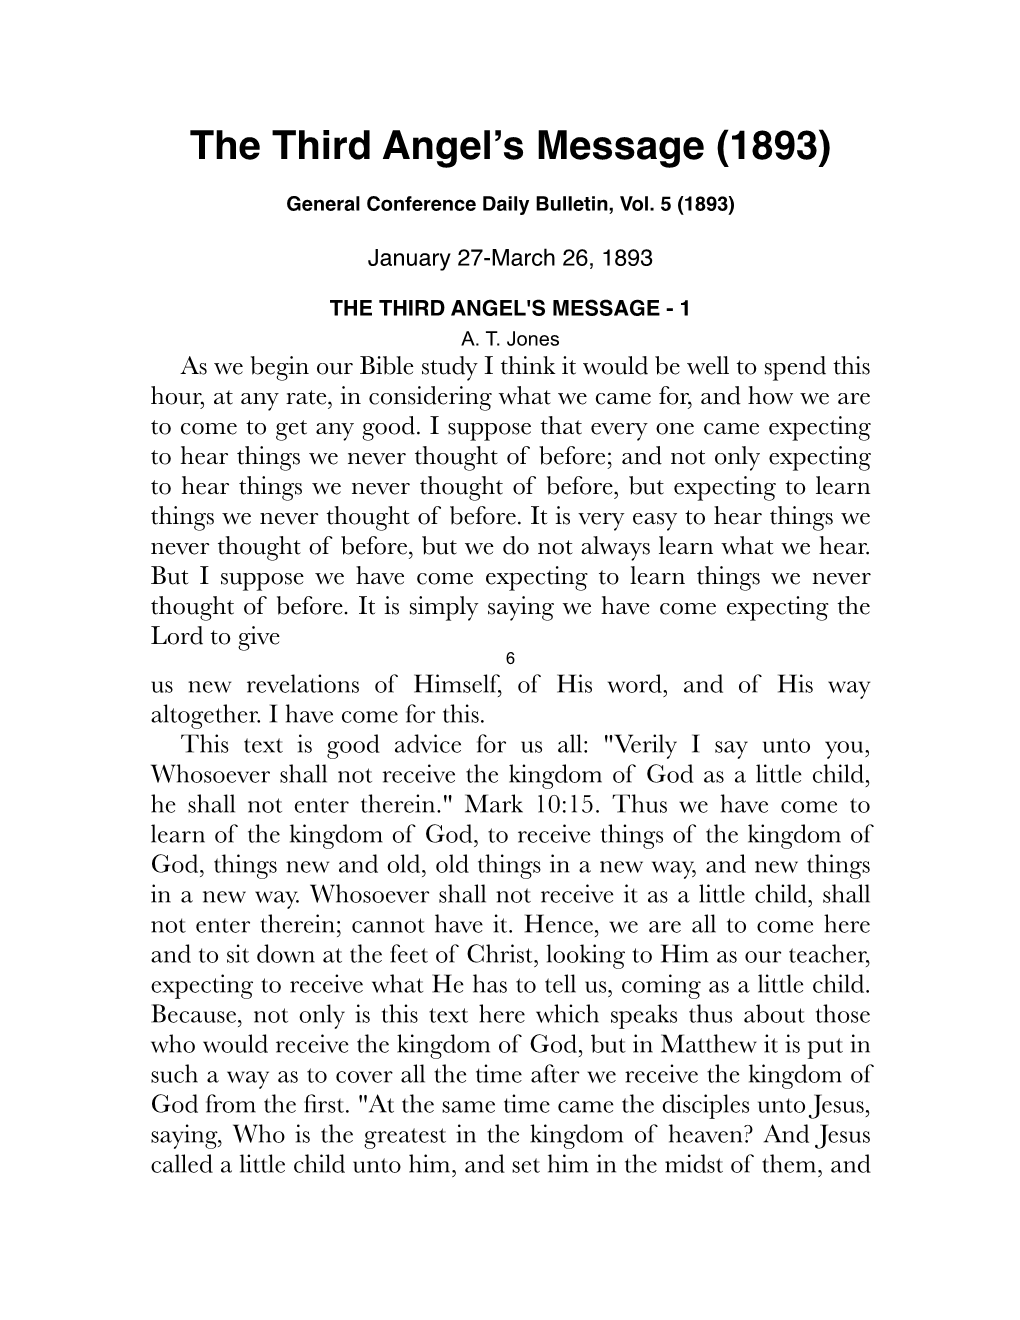 Jones – the Third Angels Message (1893)